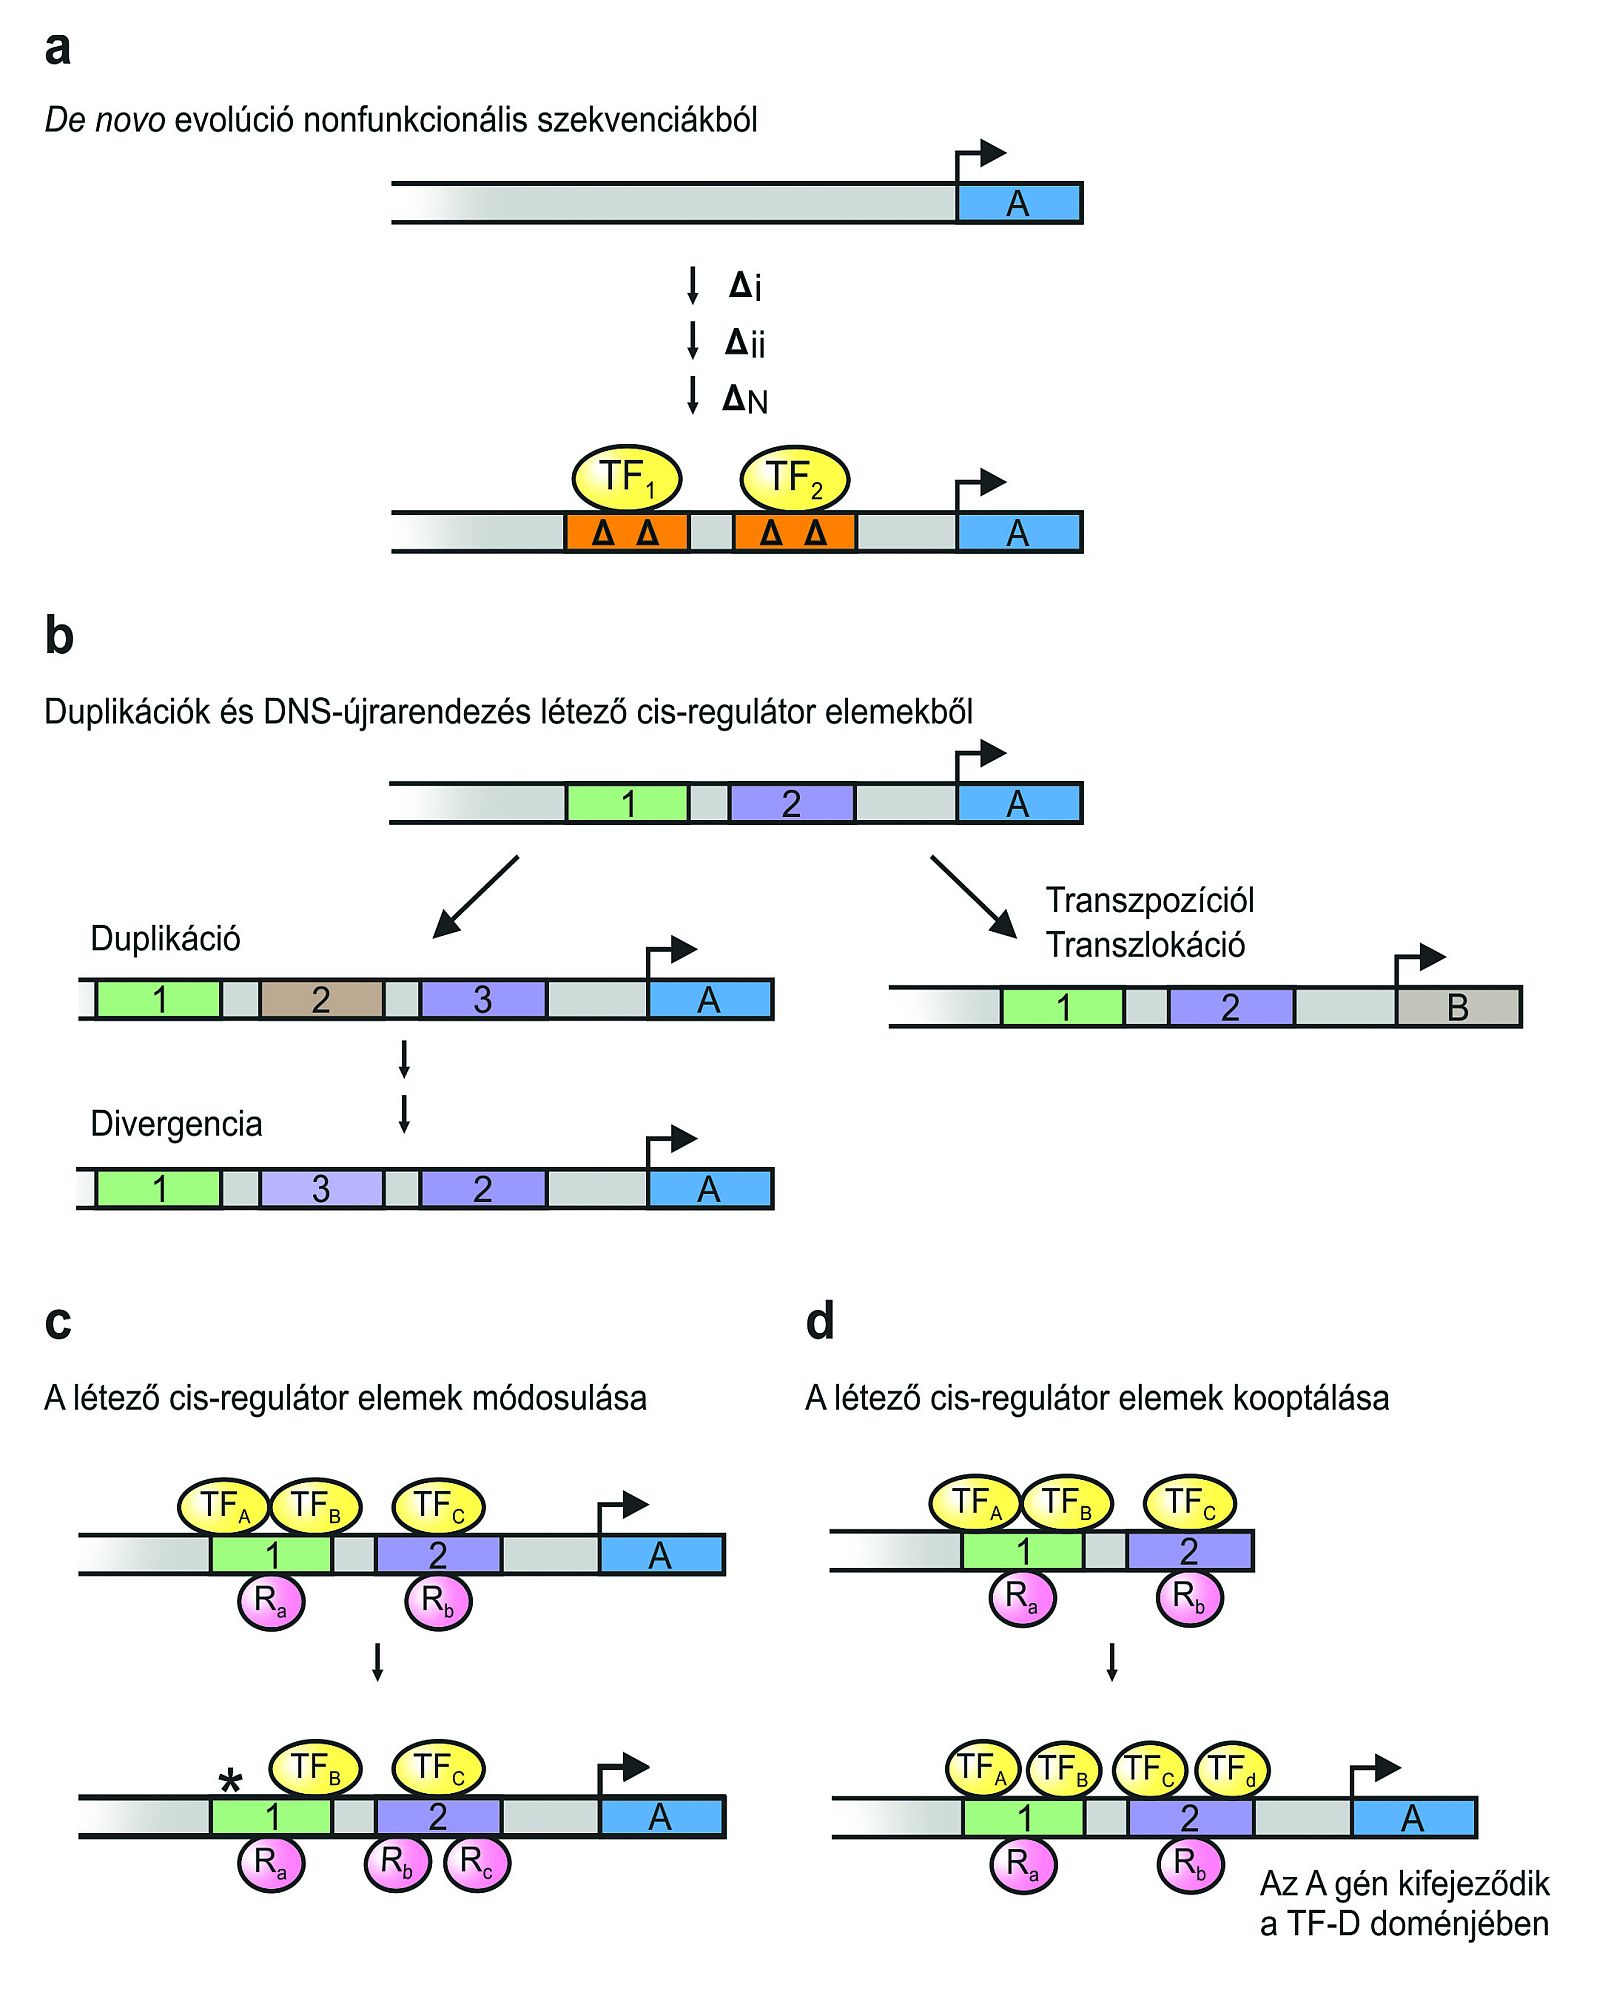 A cisz-regulátor elemek evolúciójának négy alapvető módozata (TF: transzkripciós faktor; Δ: mutáció; R: represszor)